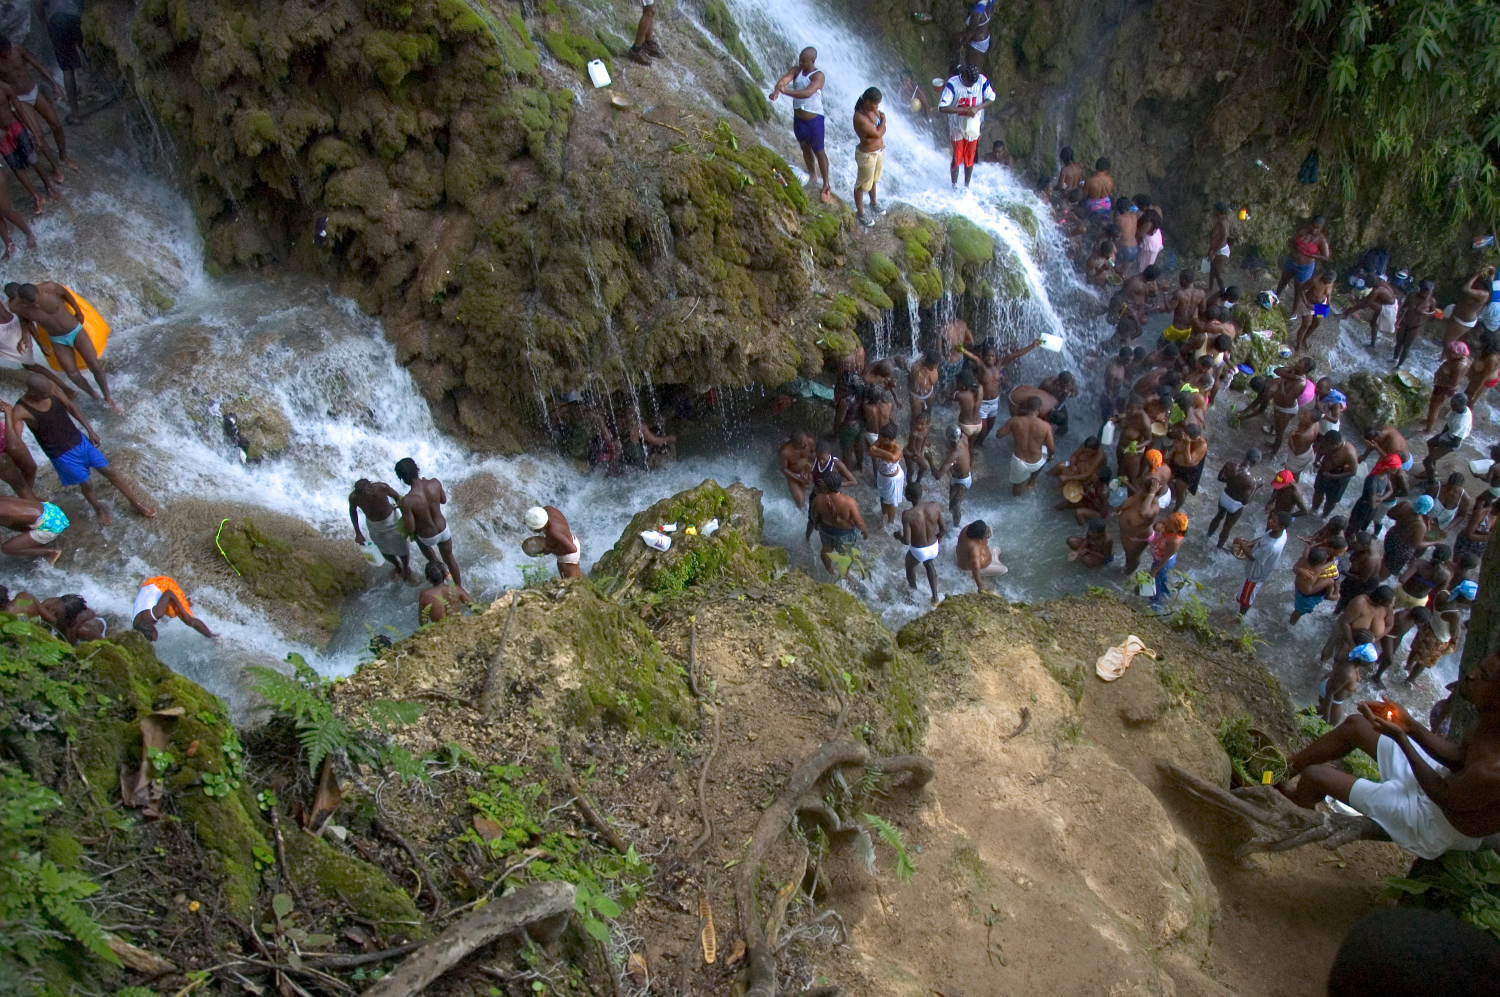 Vodou pilgrimage to the waterfalls of Saut d’Eau near Port-au-Prince, Haiti